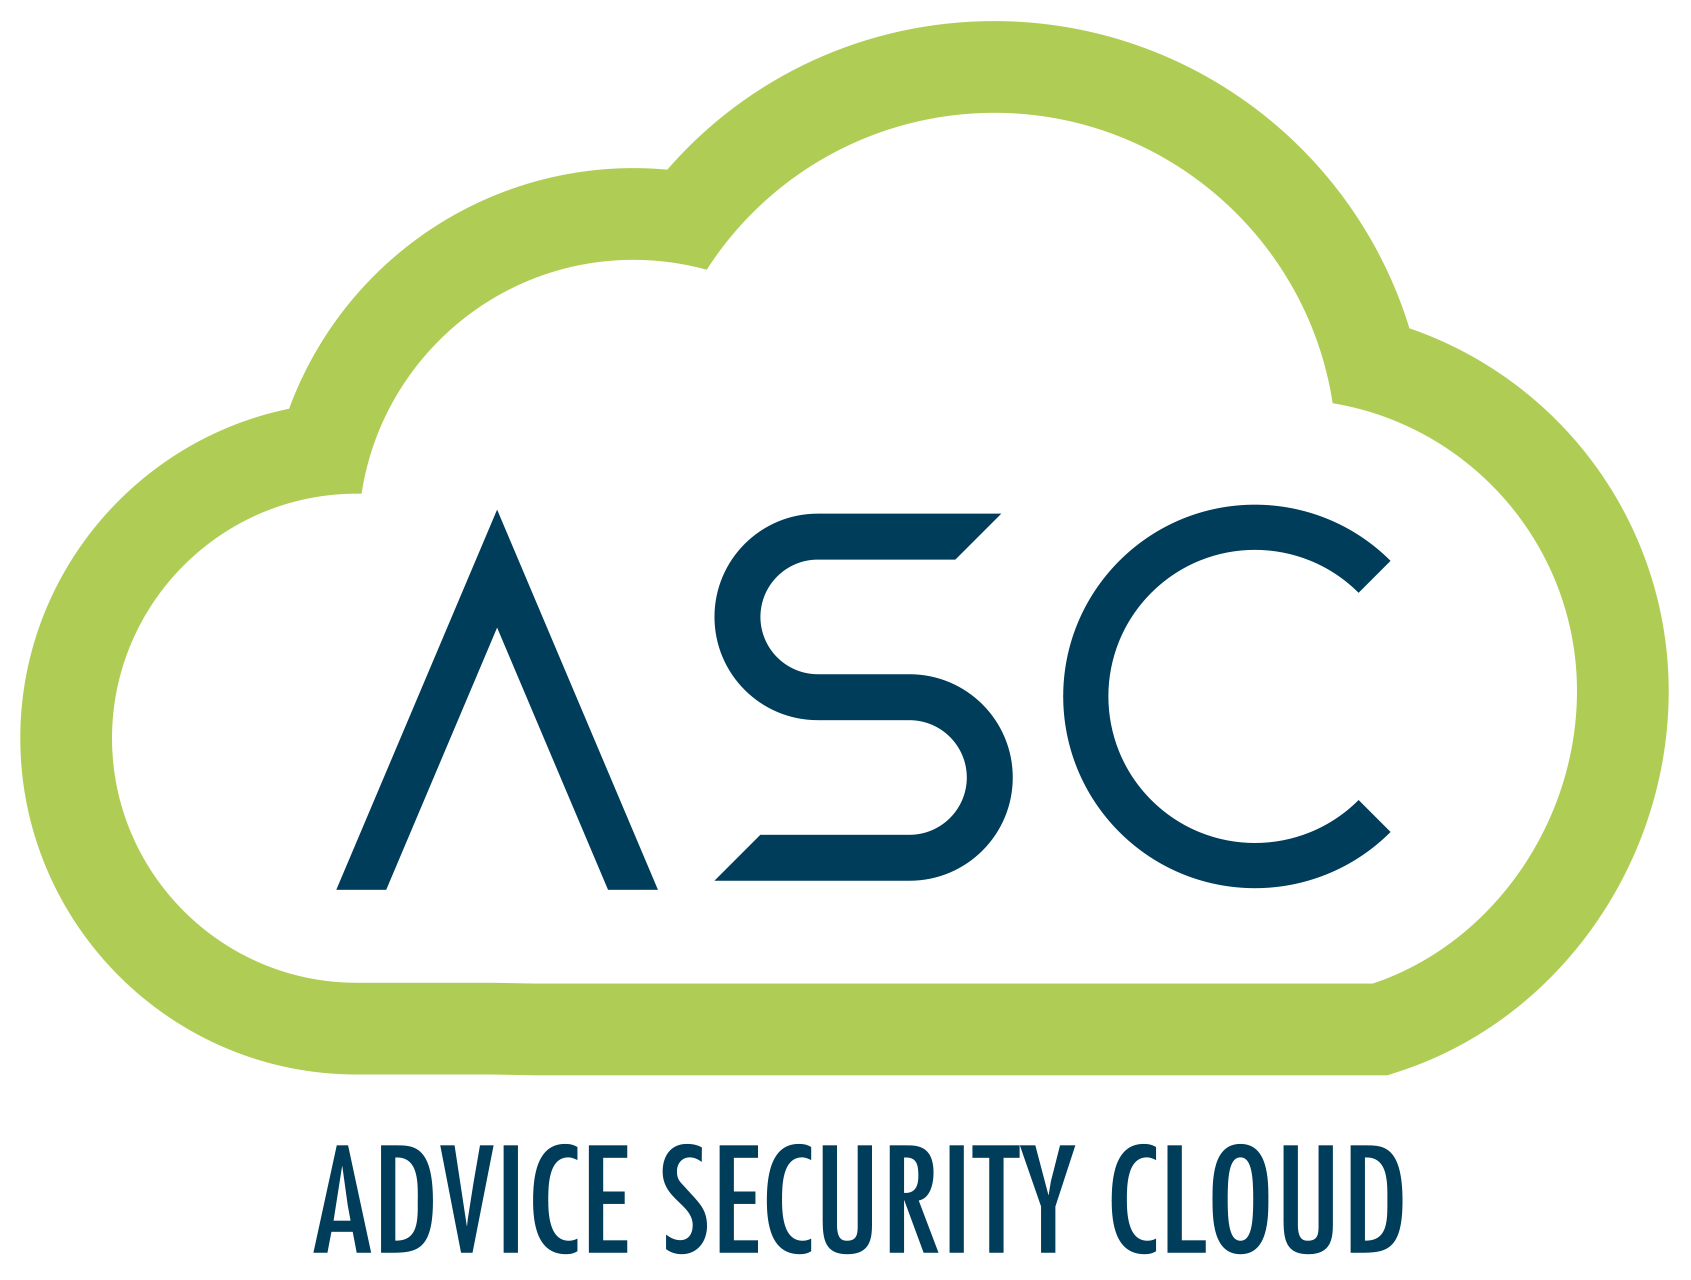 Advice Security Cloud Srl